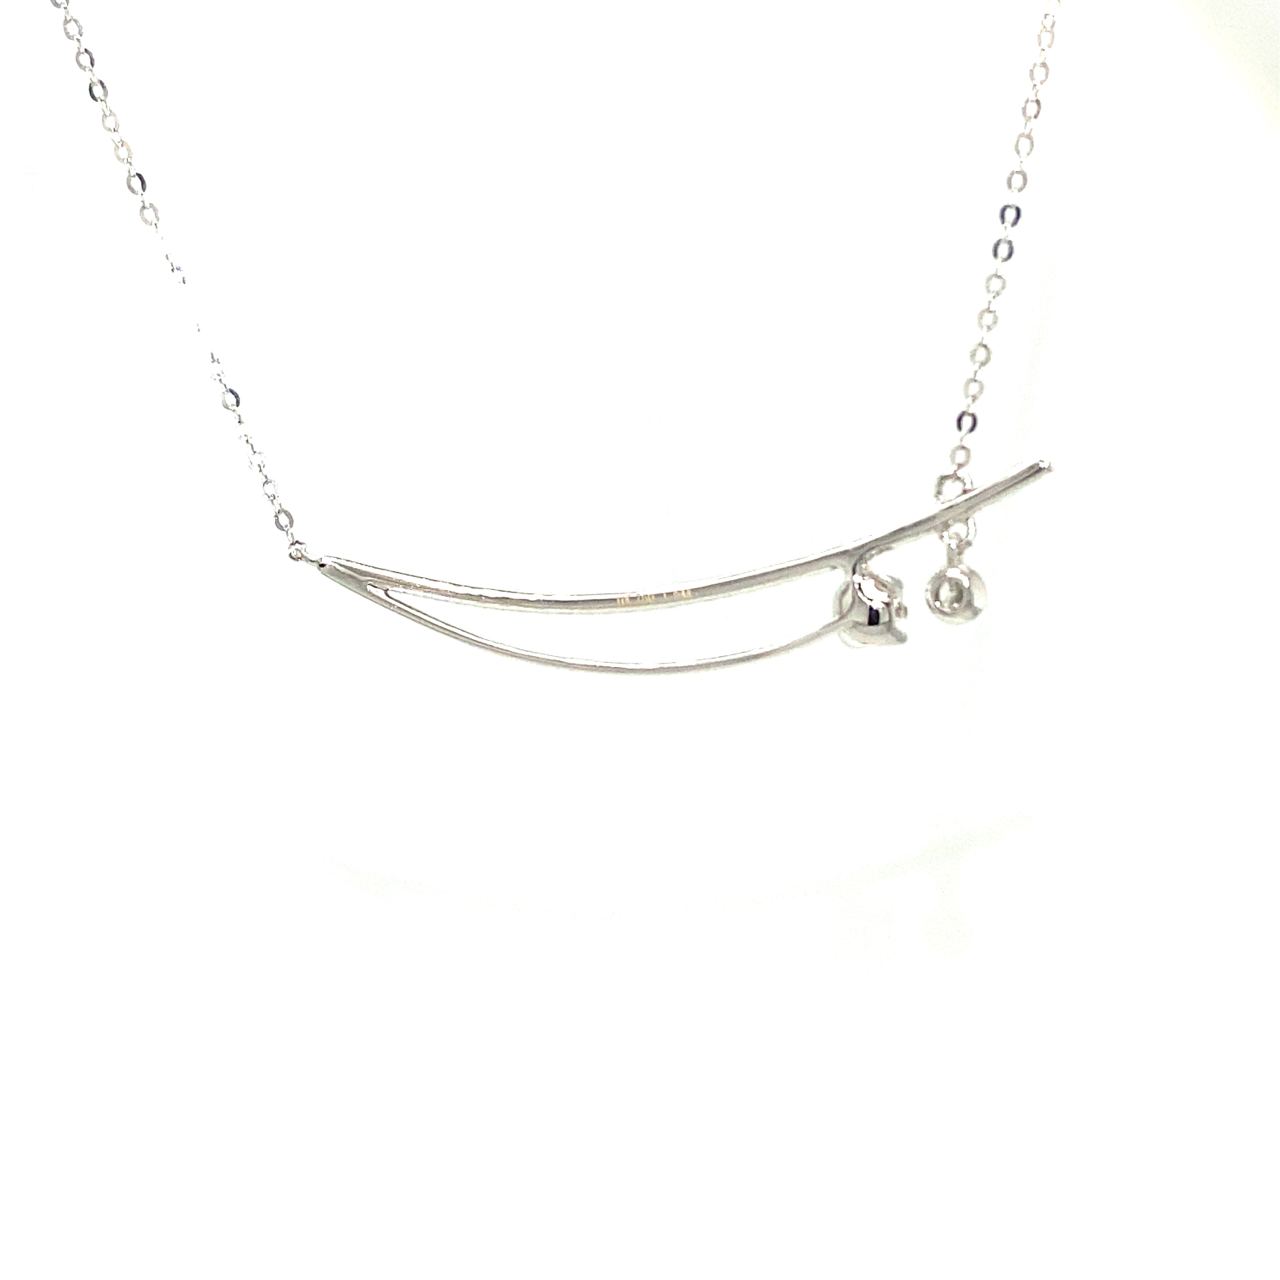 18K White Gold Double Row Smile Style Diamond Necklace